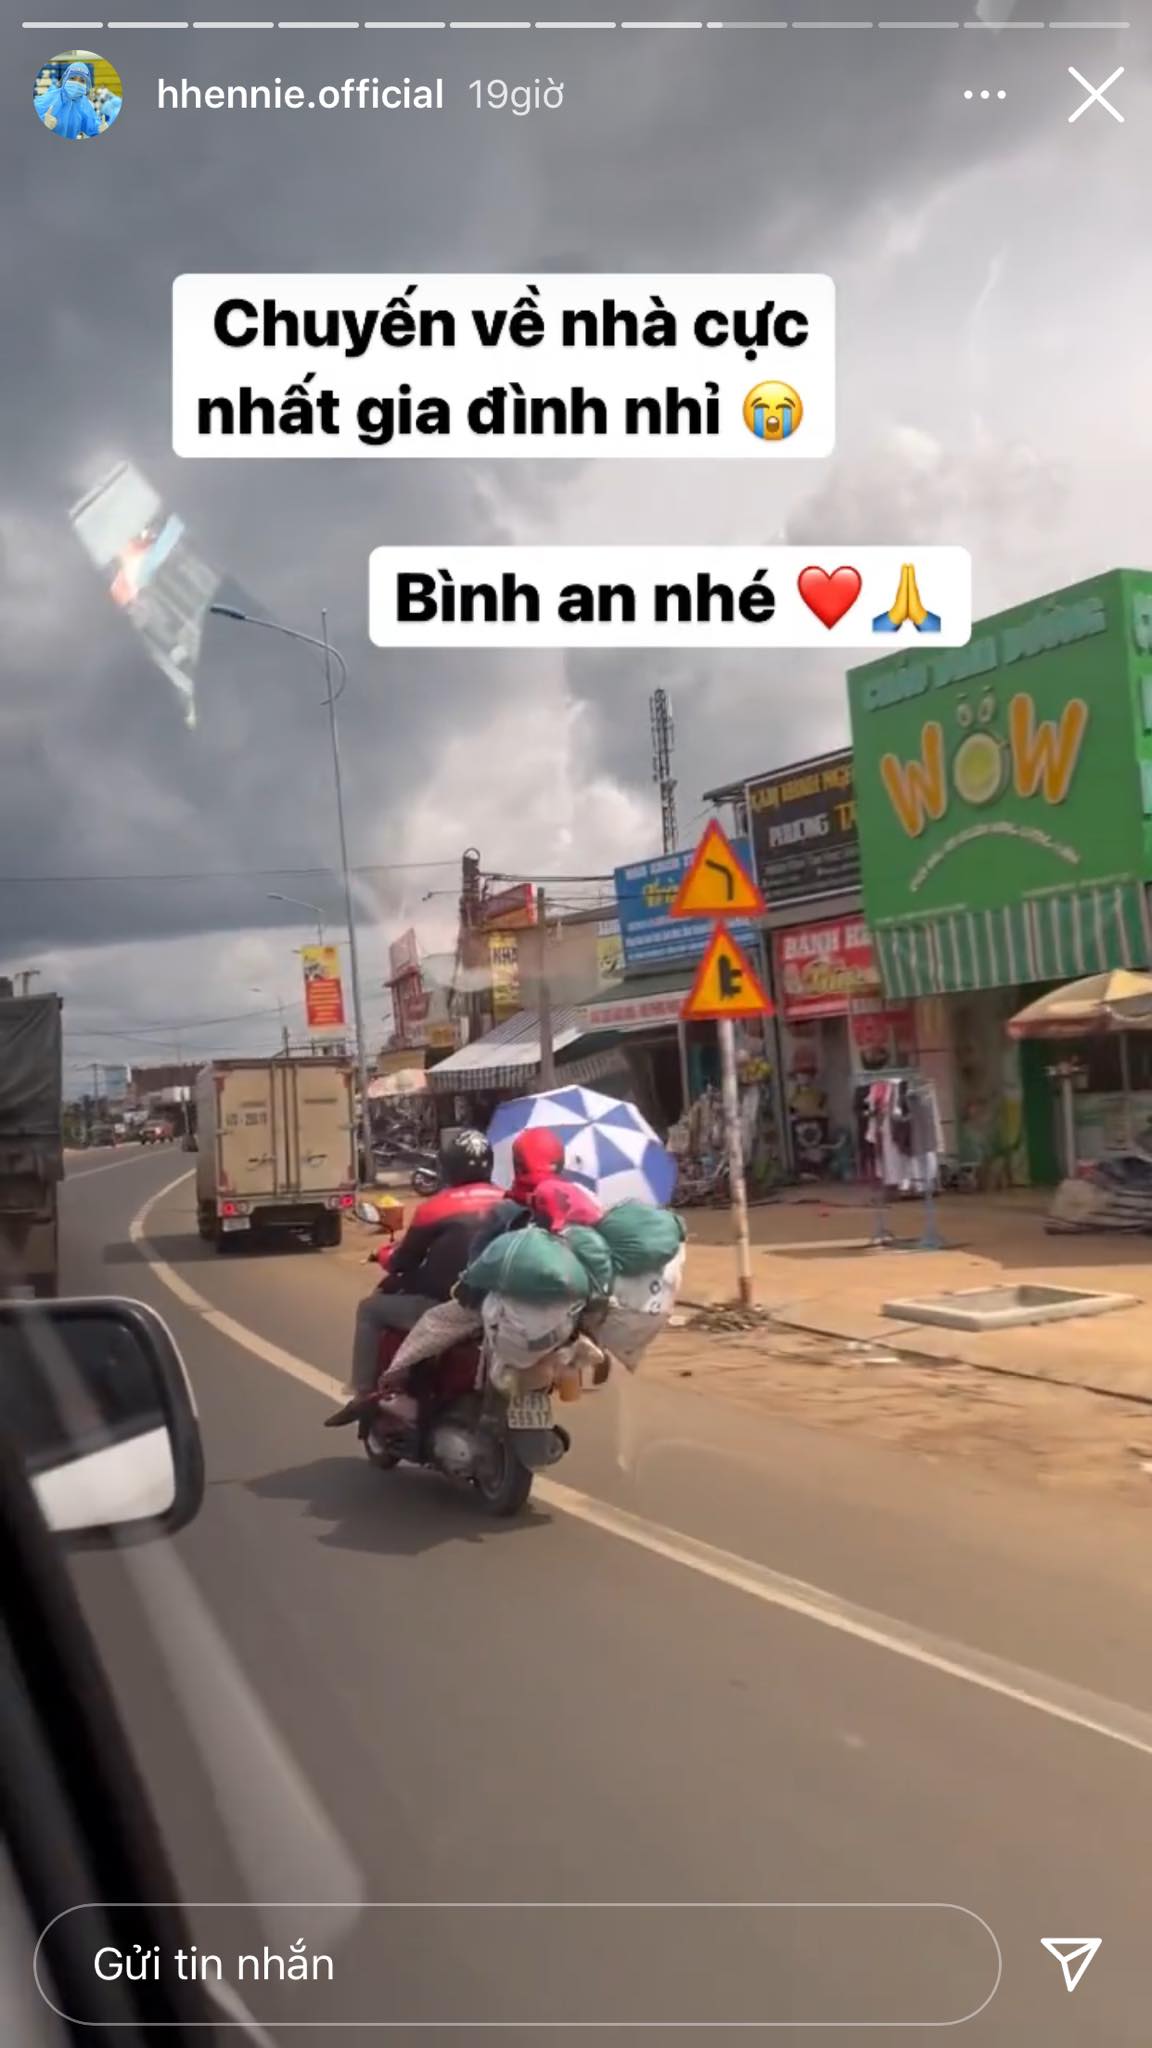 Hoa hậu H'Hen Niê bật khóc khi thấy nhiều người đi bộ, chạy xe máy về quê tránh dịch - ảnh 4